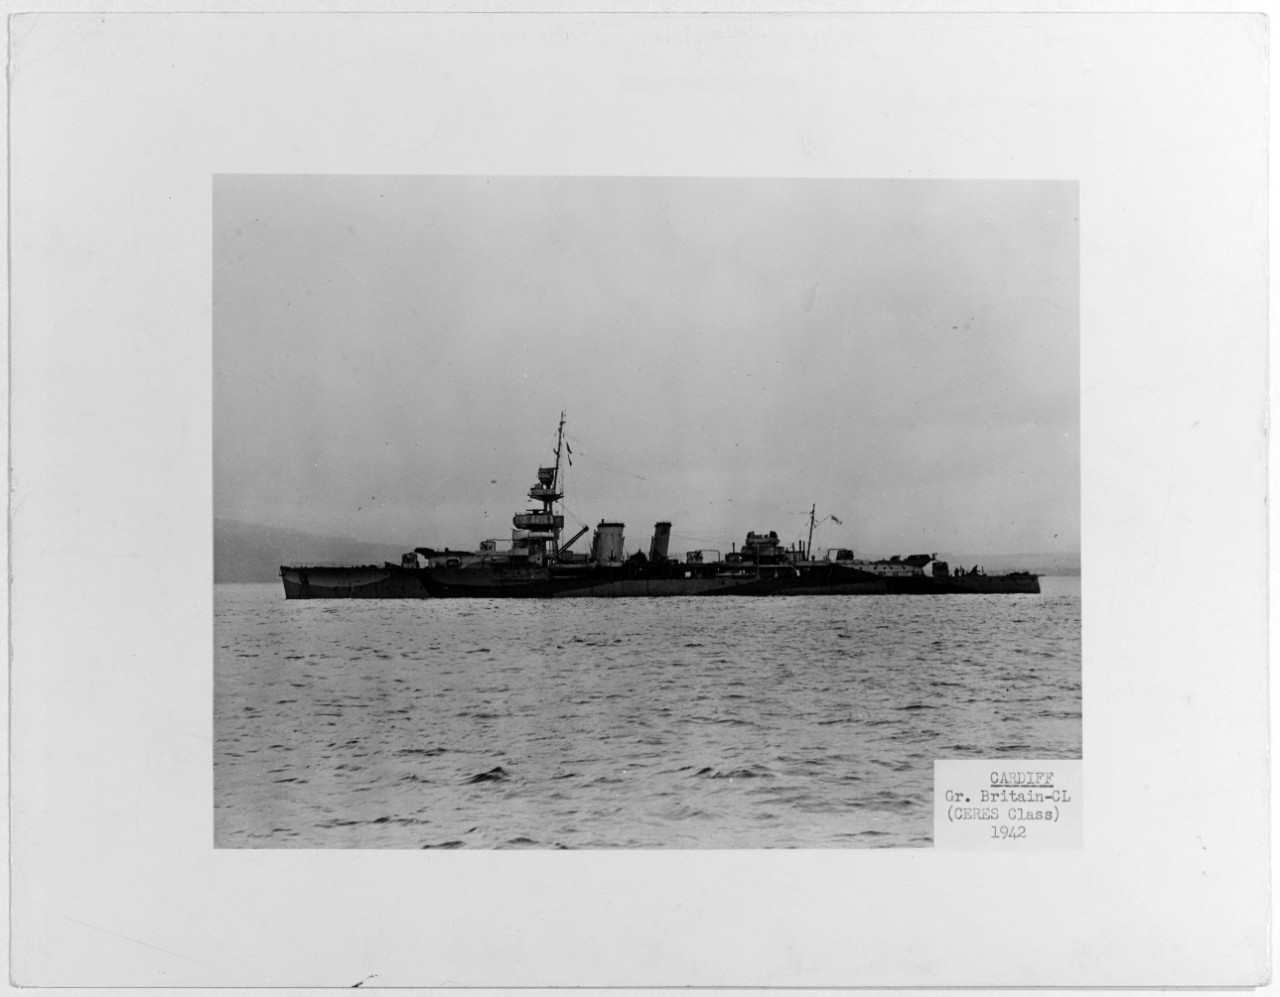 CARDIFF (British light cruiser, CERES class, 1917-1946)